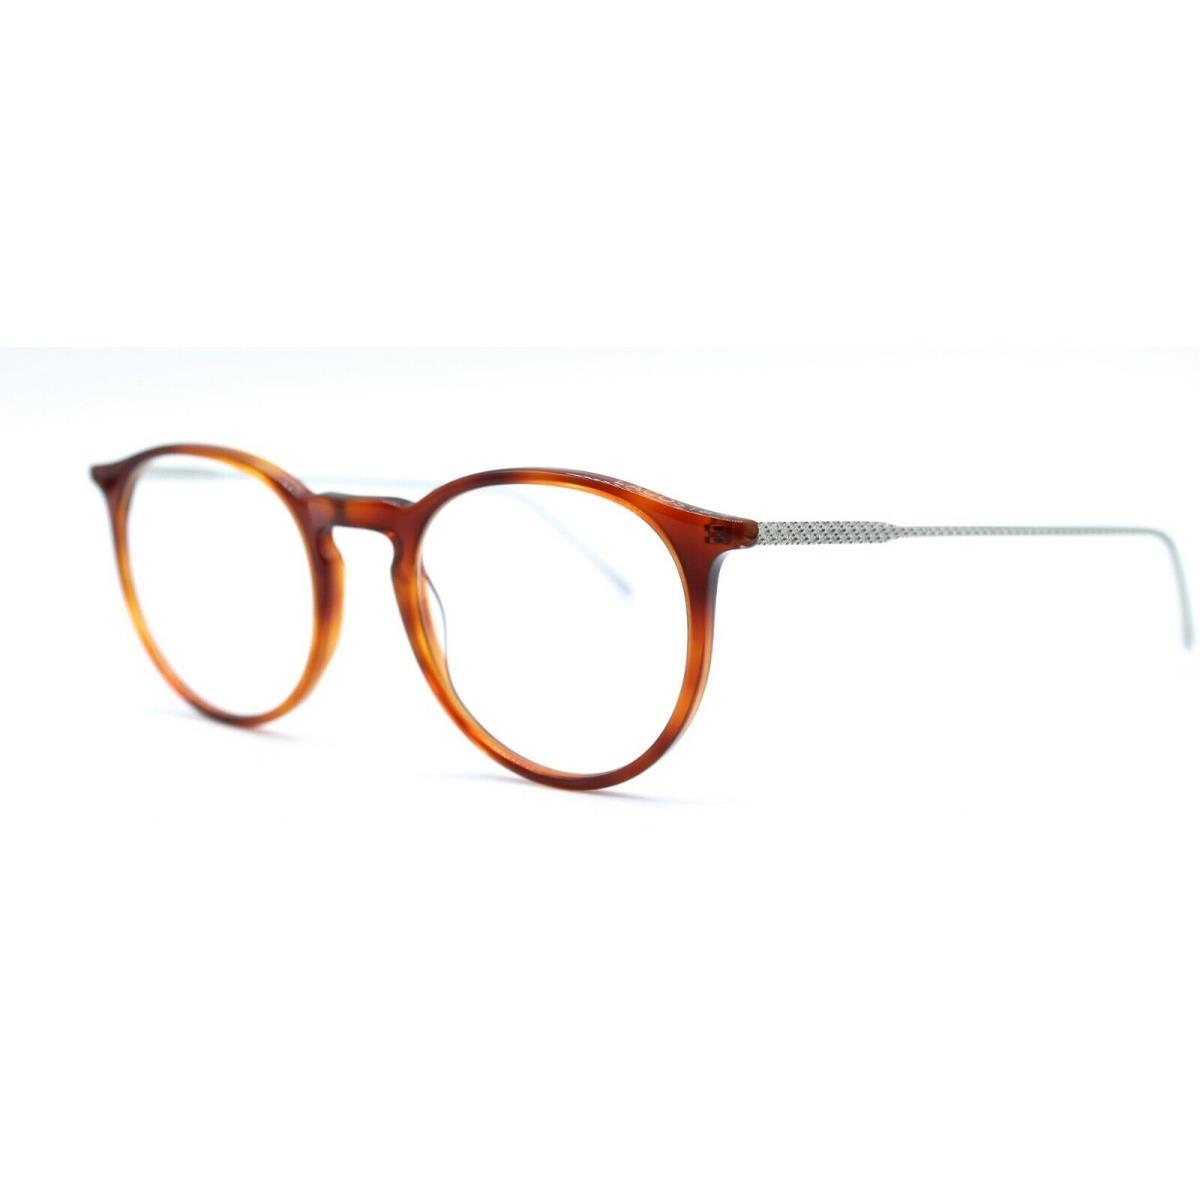 Lacoste - L2815PC 218 49/20/145 - Blonde Havana - Eyeglasses Frame - Frame: Orange